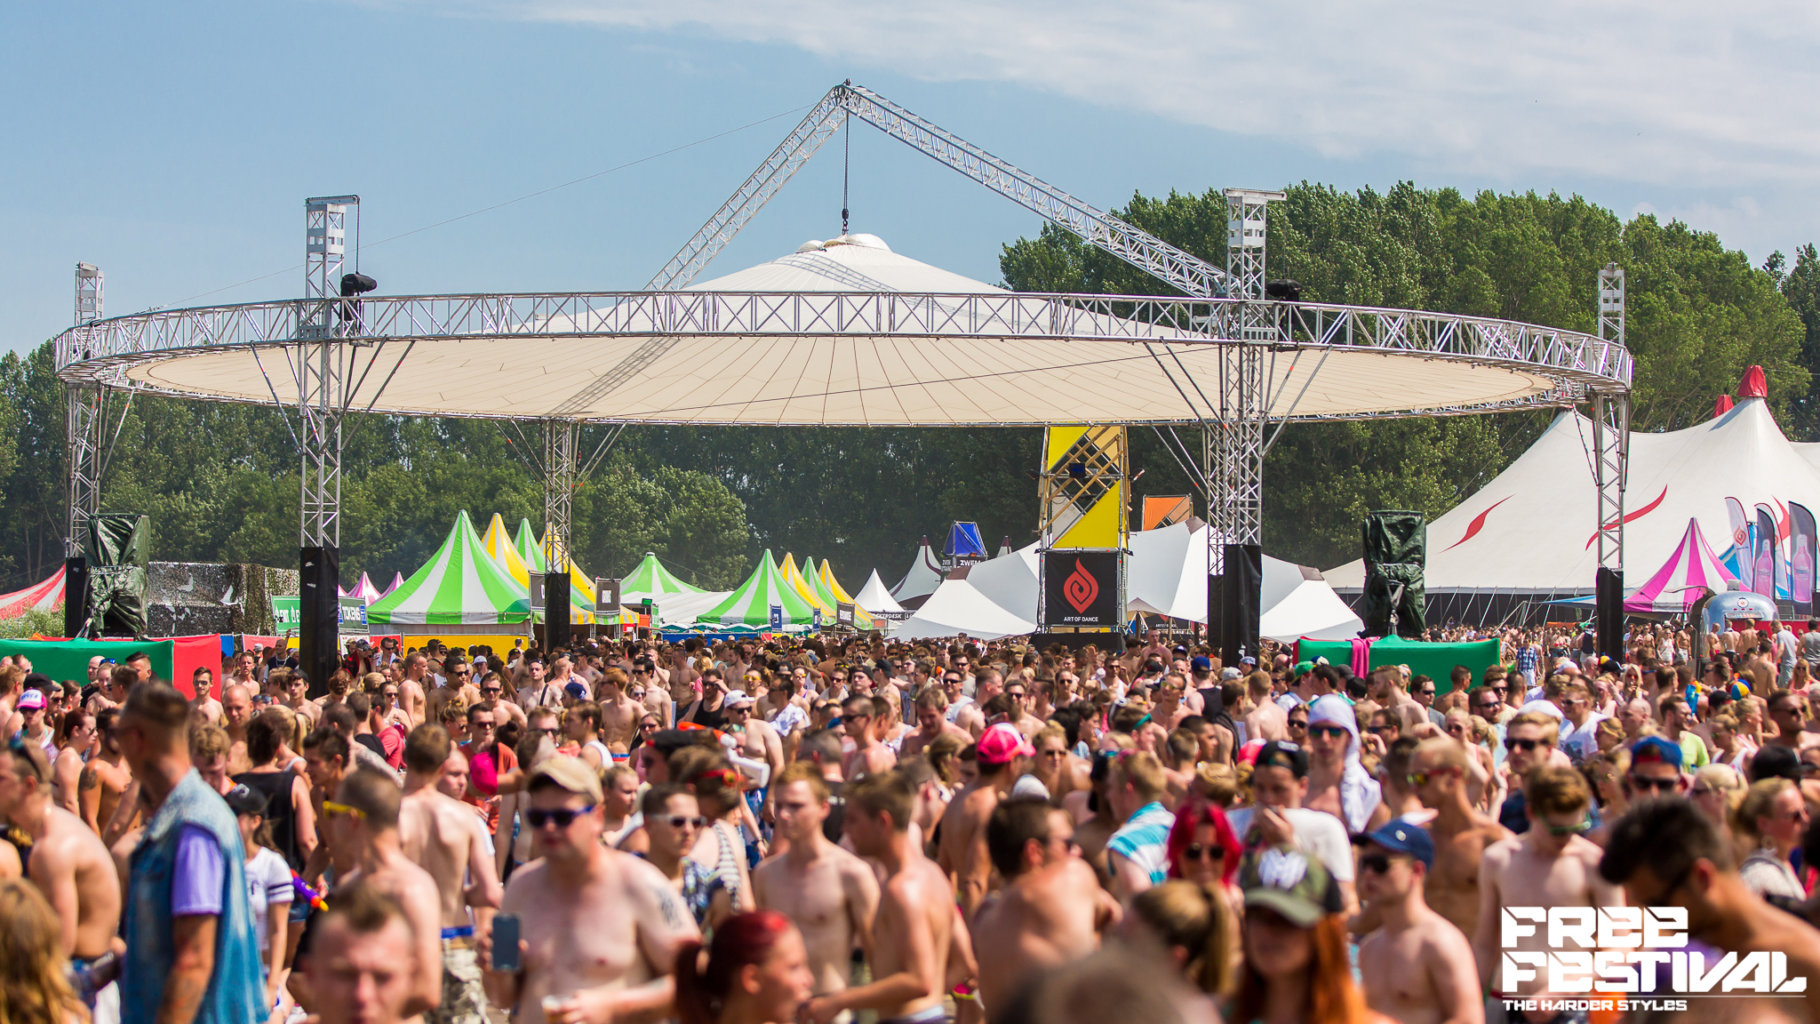 Free Festival 2015 – The Original